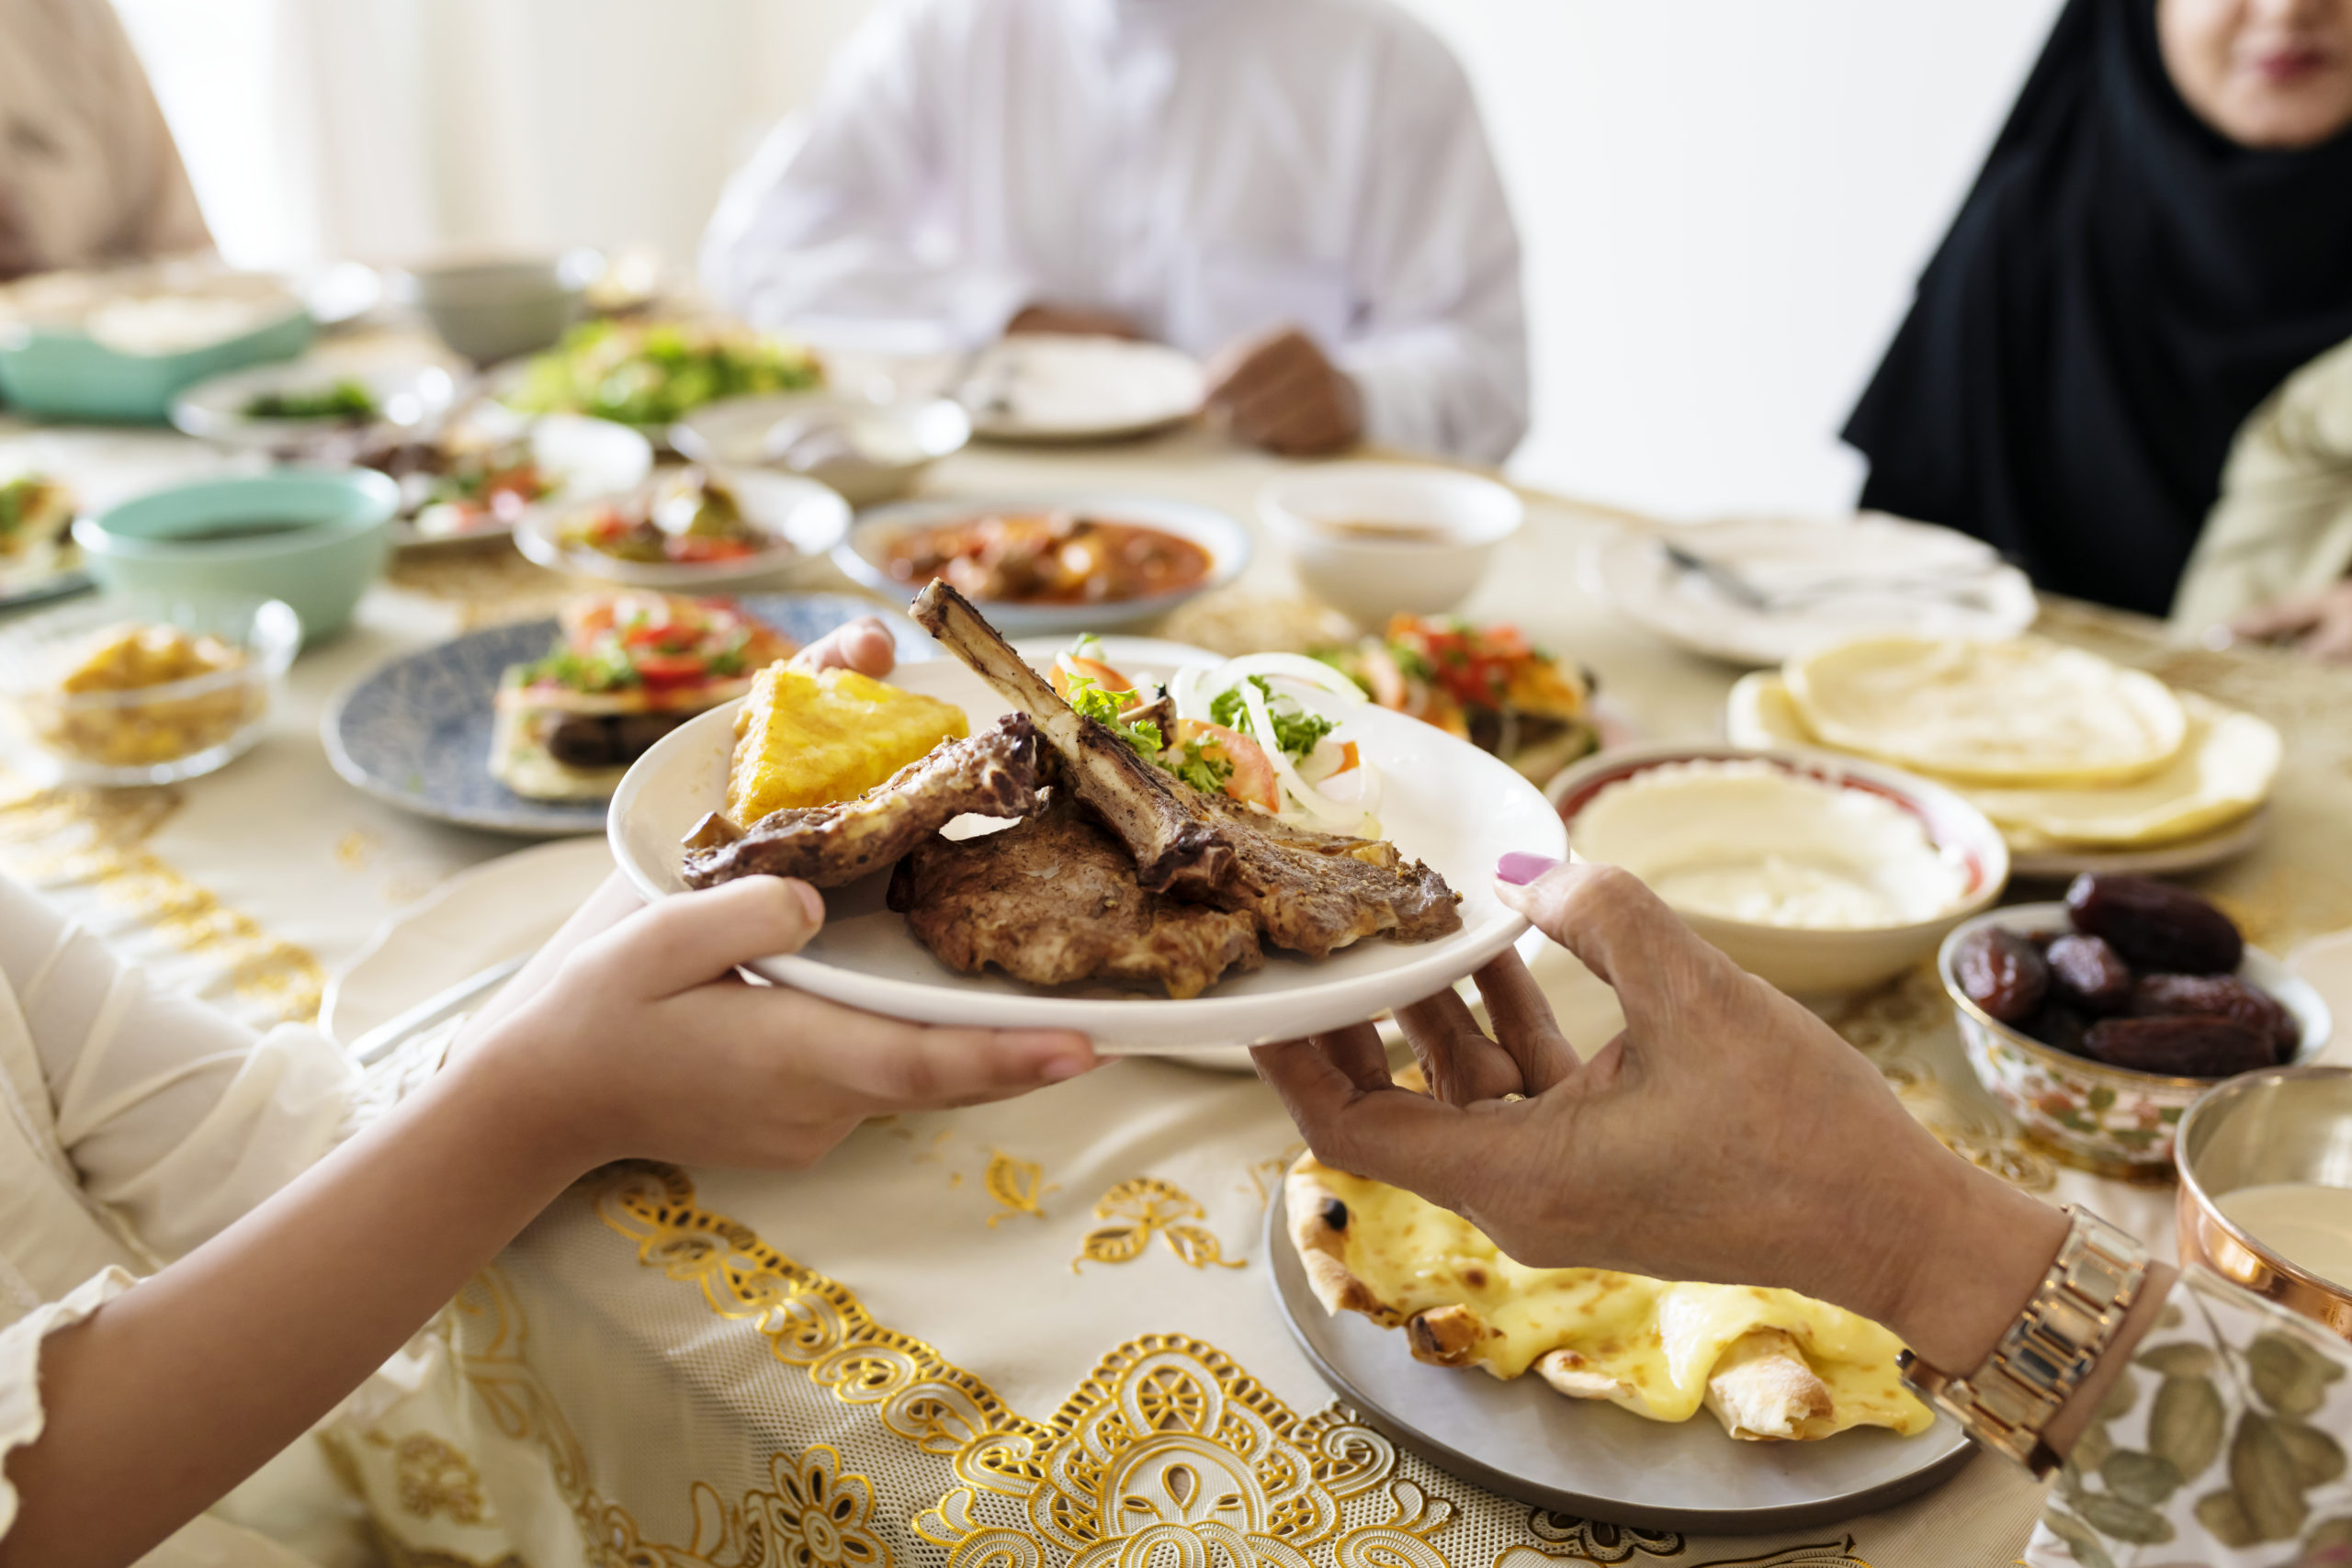 Une famille musulmane partage un repas de l'Aïd autour d'une table. Au premier plan apparaît une main qui tend une assiette contenant des côtelettes d'agneau et de la salade à une autre personne.